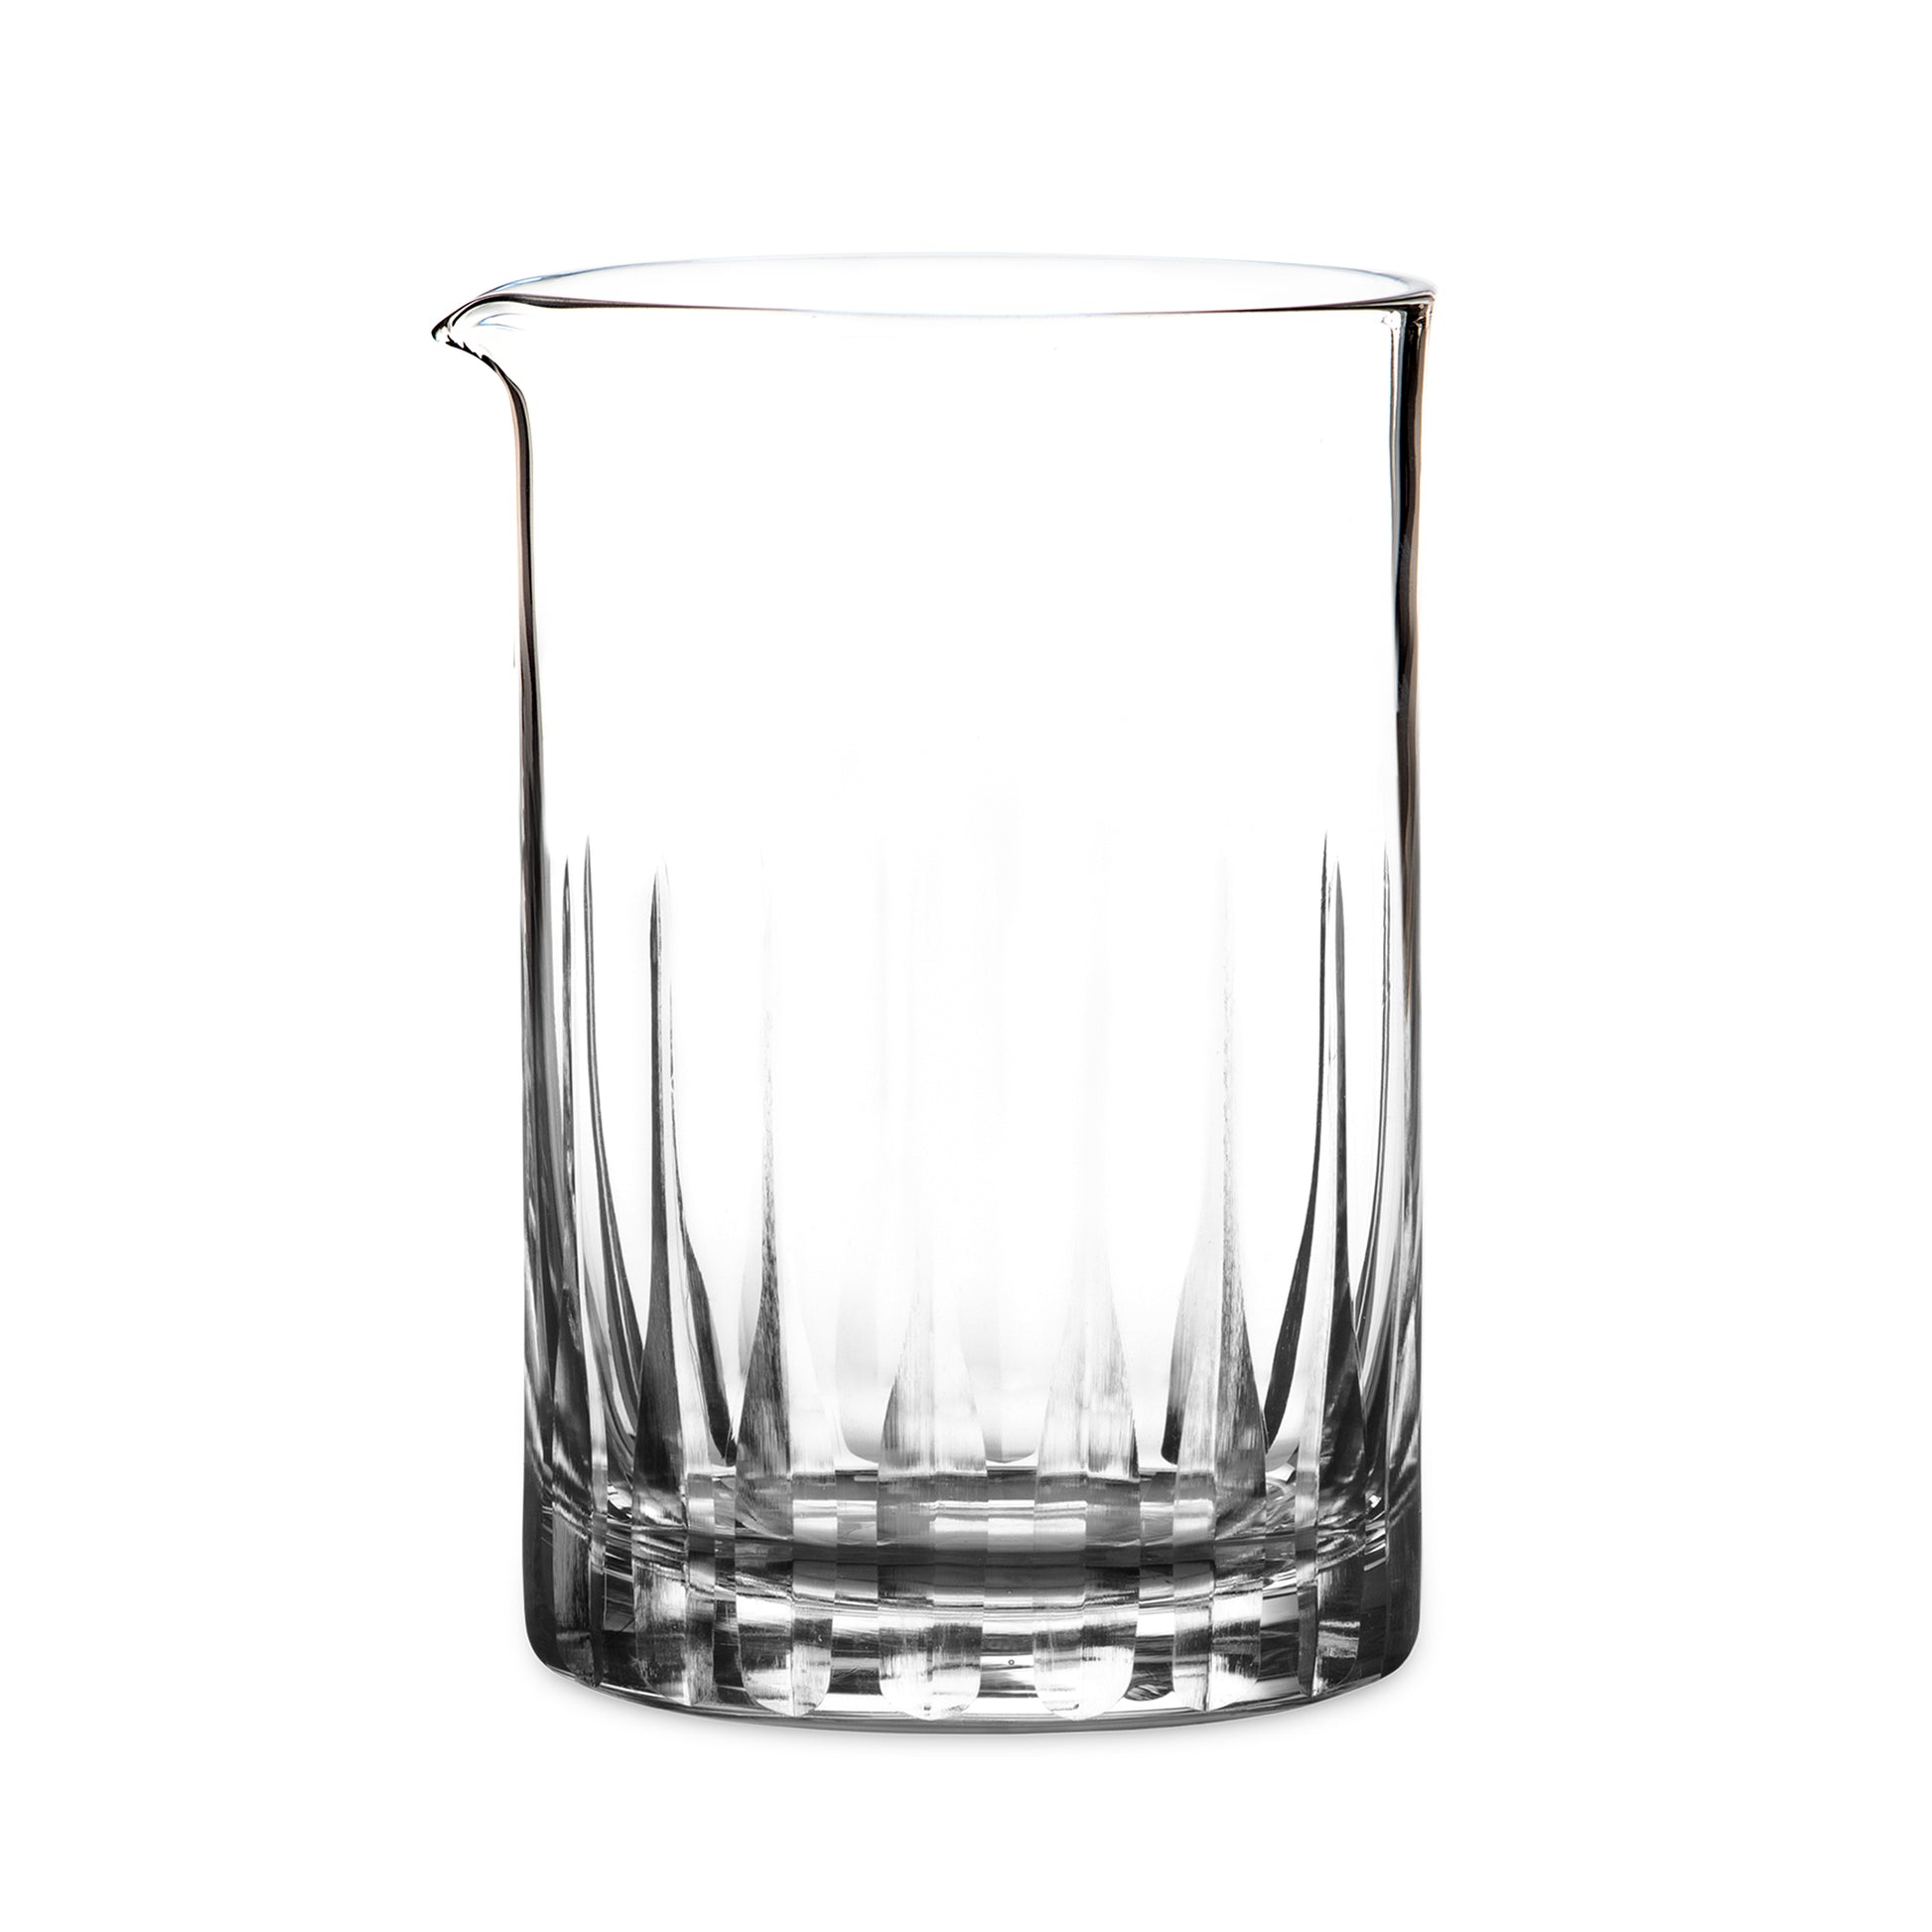 SEAMLESS PADDLE MIXING GLASS / 550ml (19oz) / FLAT BASE